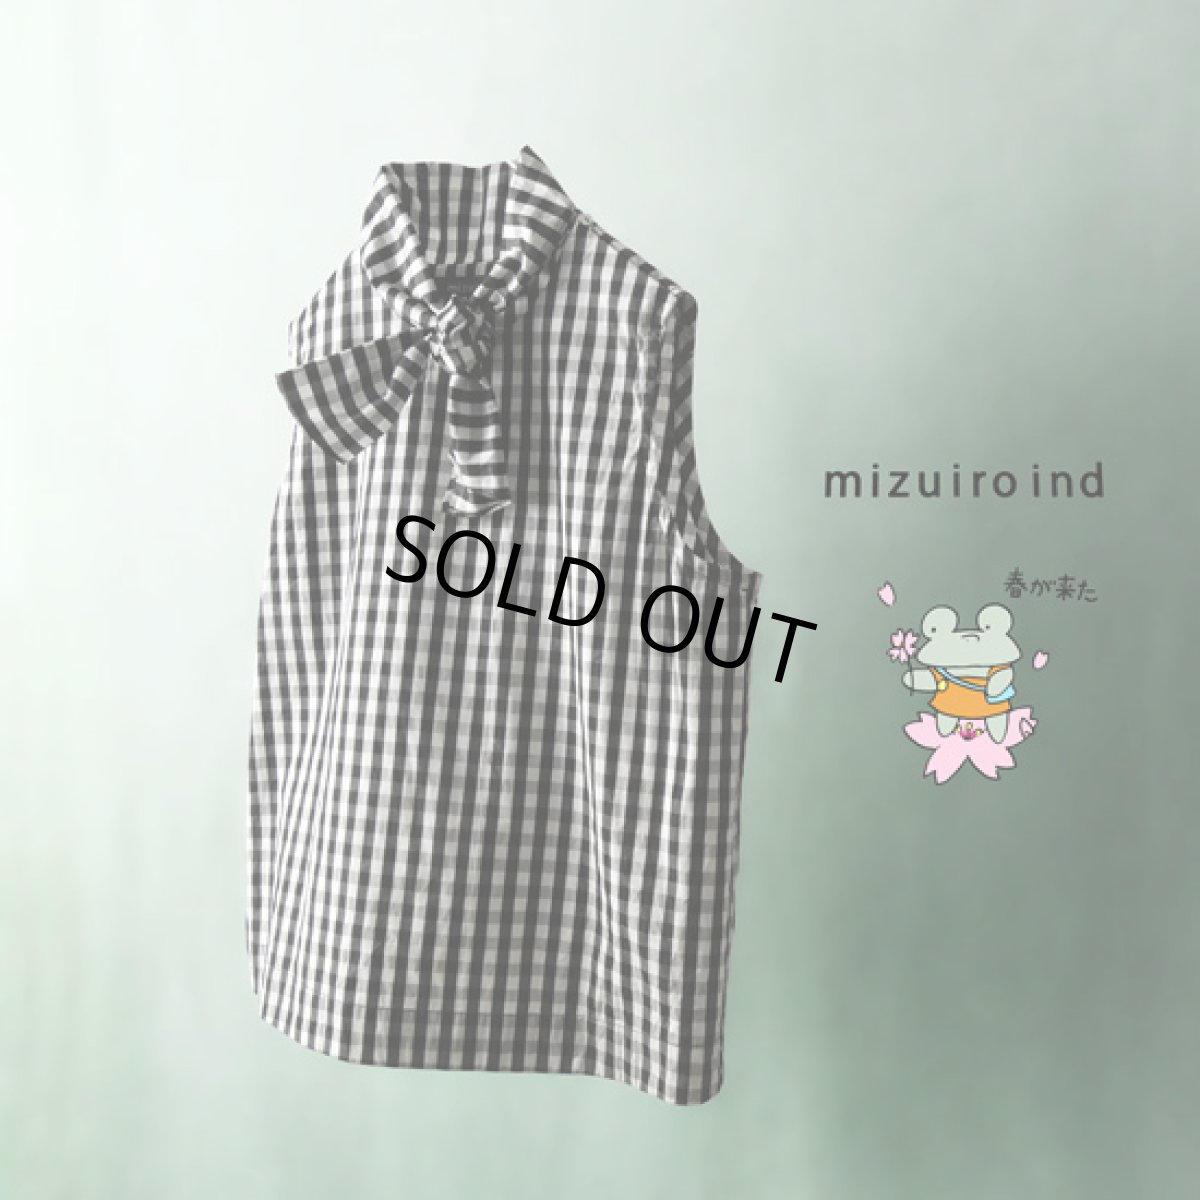 画像1: mizuiroind / ミズイロインド ギンガムチェック タイシャツ (1)